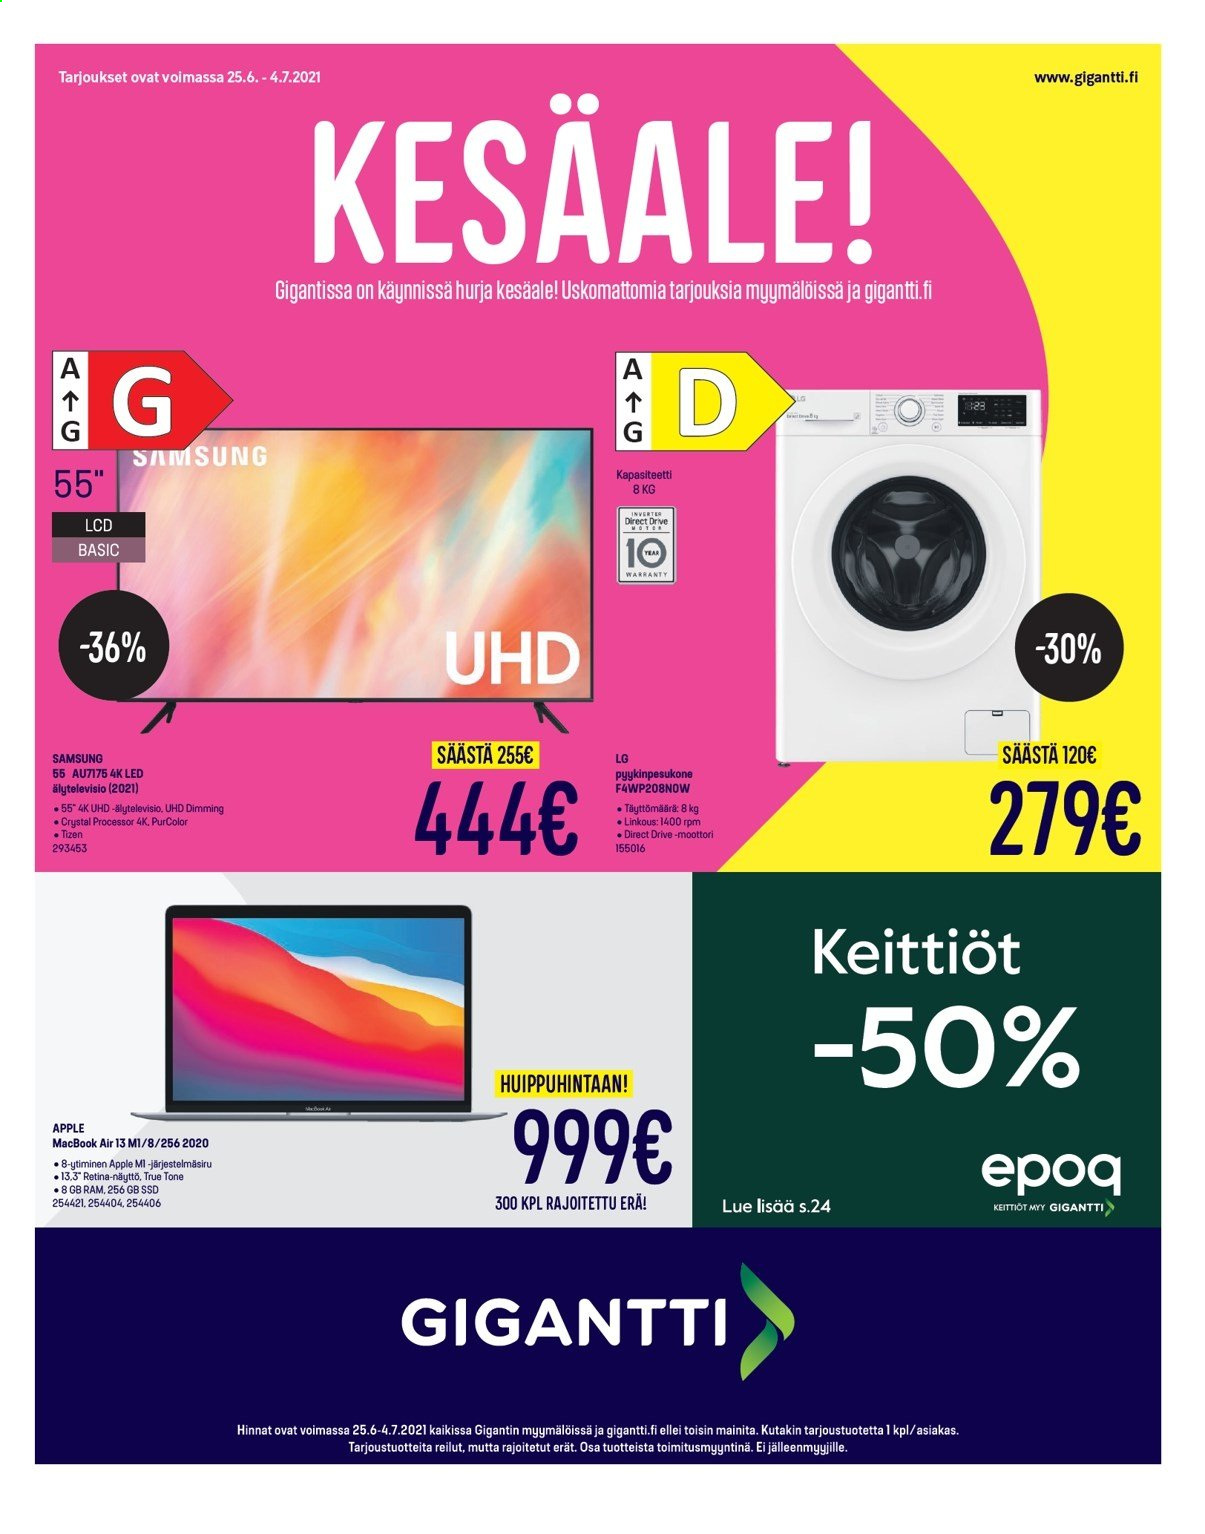 thumbnail - Gigantti tarjoukset  - 25.06.2021 - 04.07.2021 - Tarjoustuotteet - LG, Apple, Samsung, Retina, pyykinpesukone. Sivu 1.